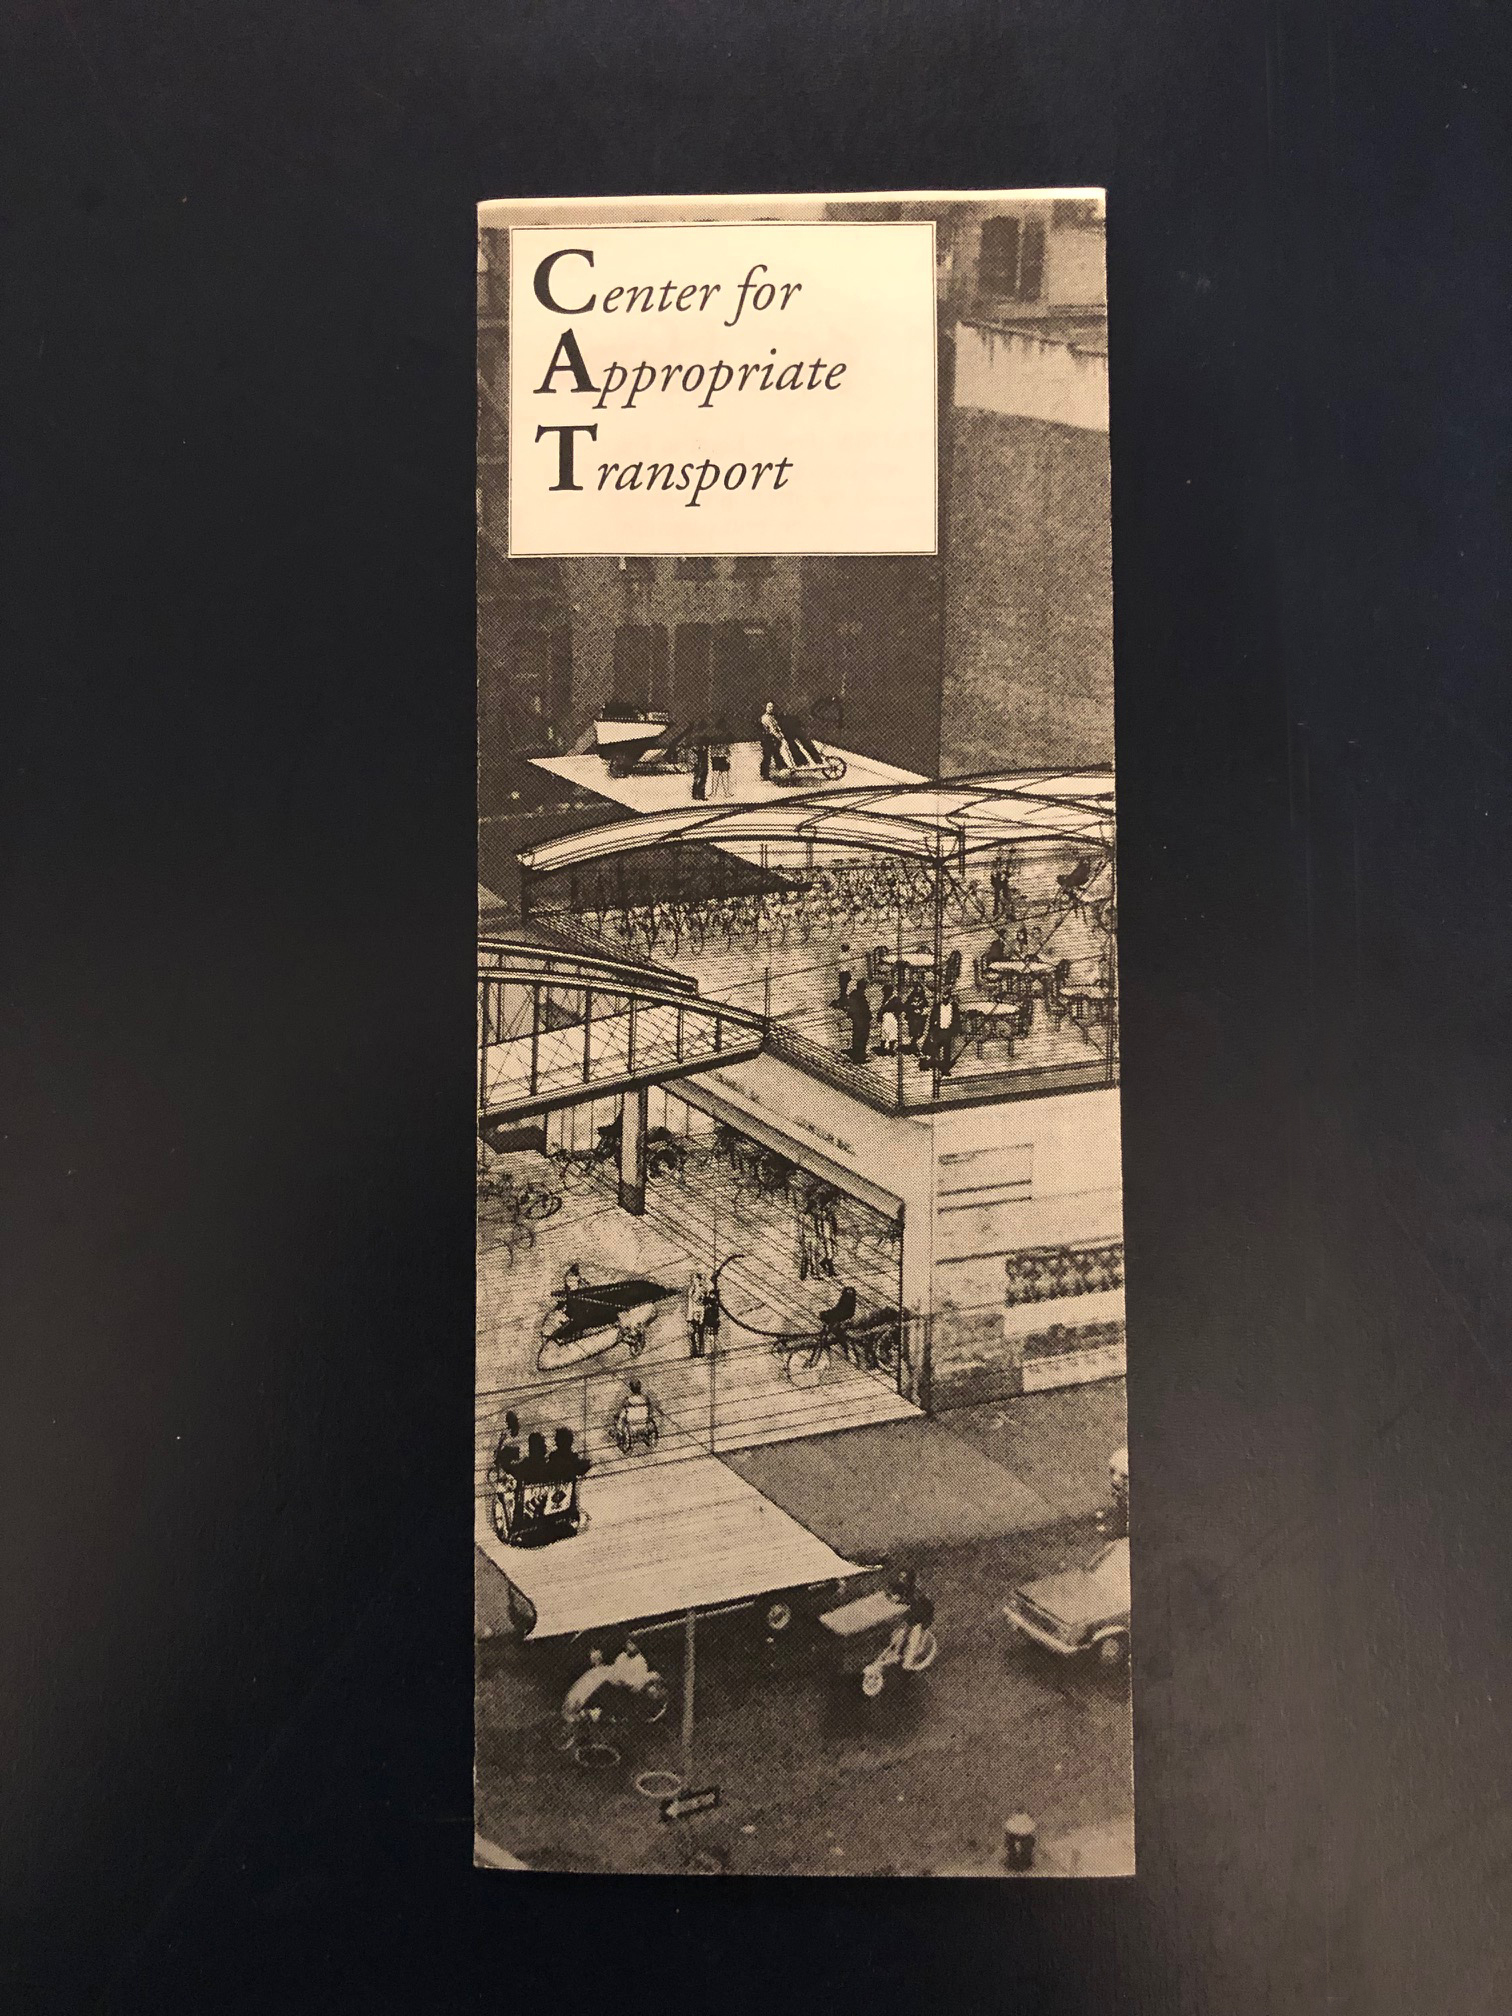 Portada de un folleto del Centro para el Transporte Apropiado que muestra una ilustración de una terminal de transporte concurrida